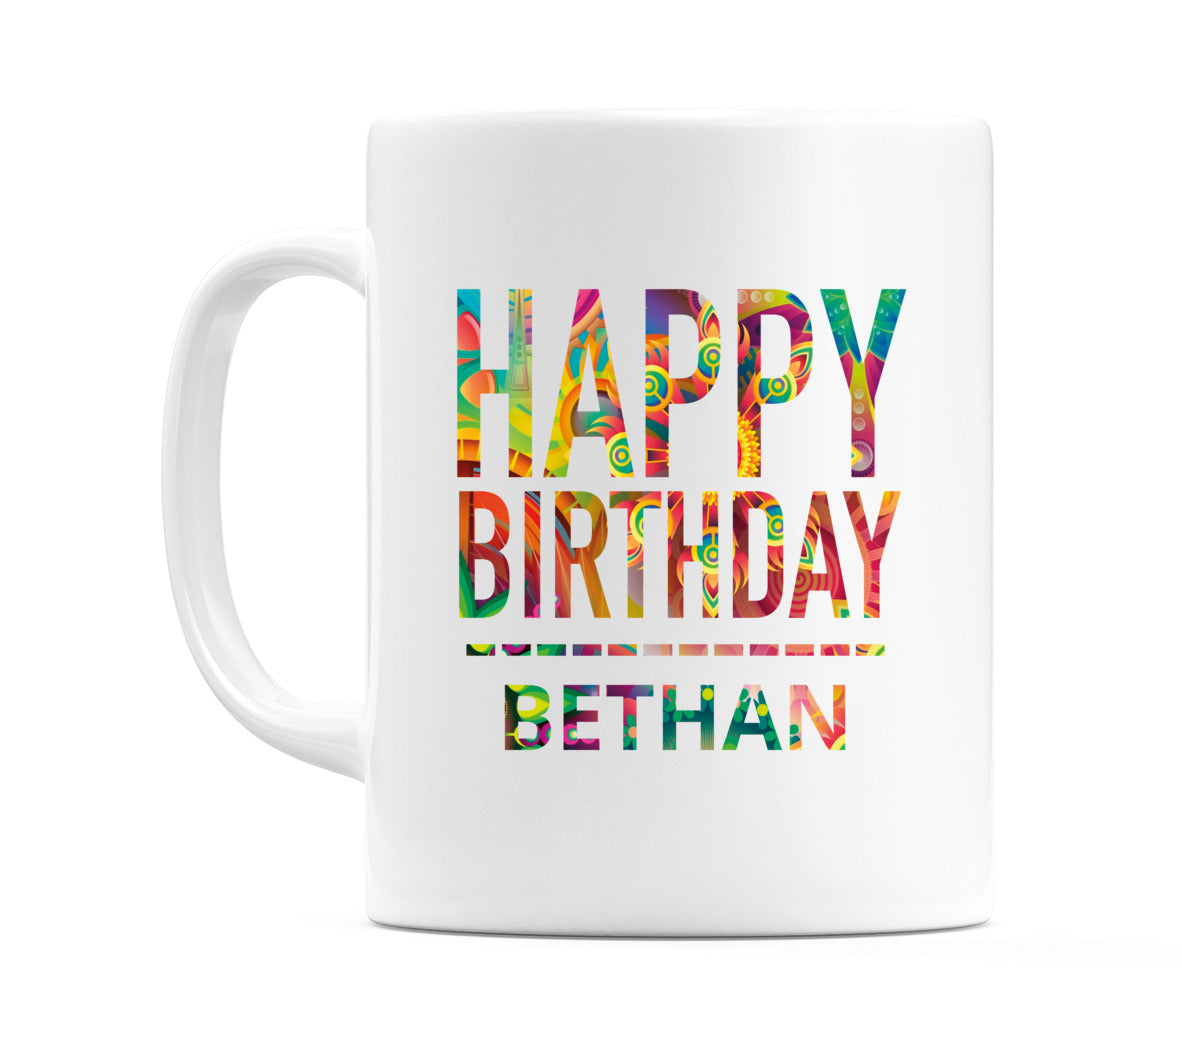 Happy Birthday Bethan (Tie Dye Effect) Mug Cup by WeDoMugs